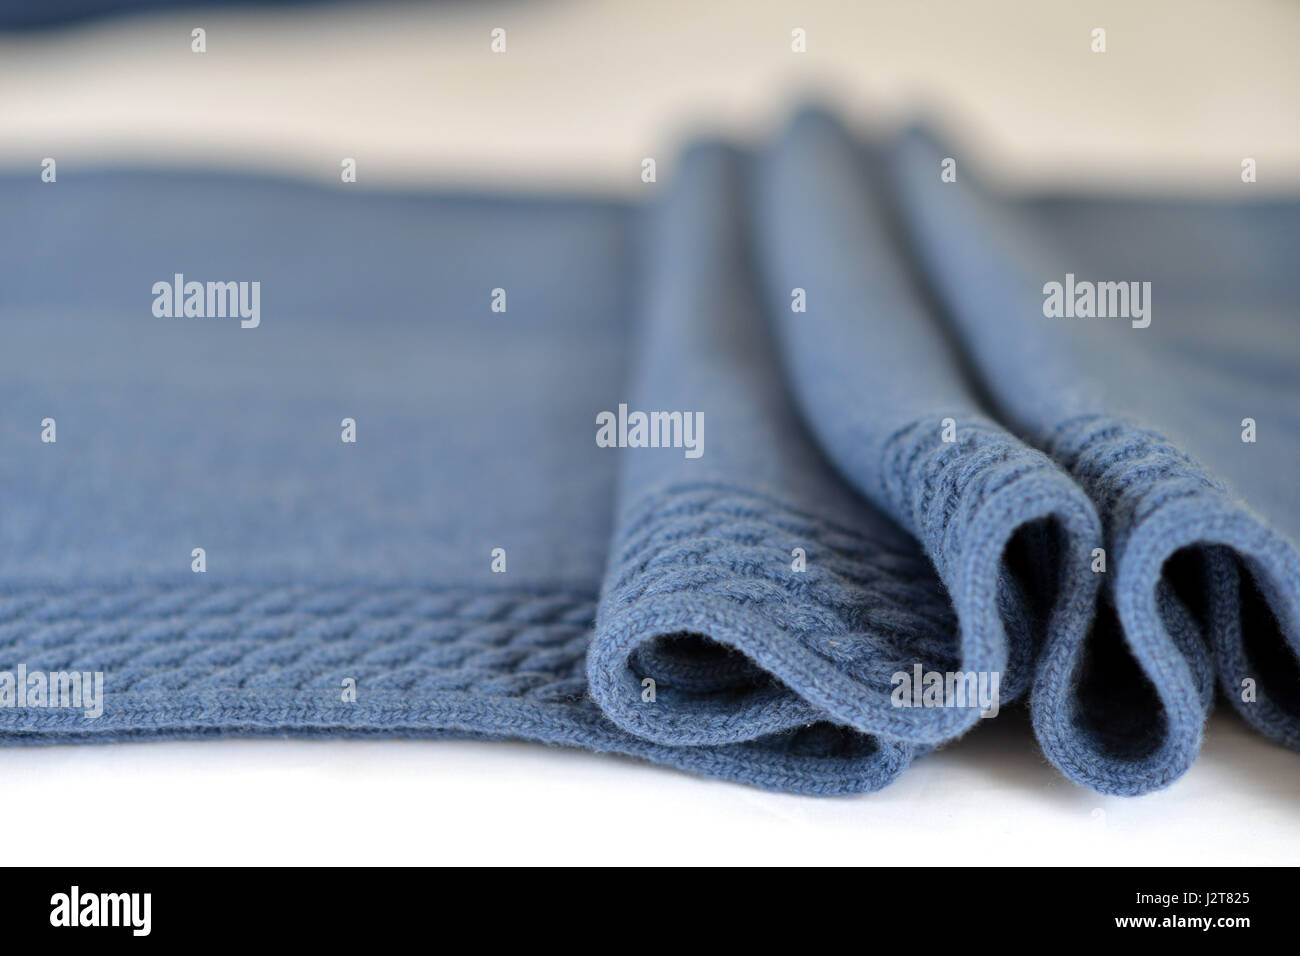 La laine bleu plié bed spread/throw Banque D'Images